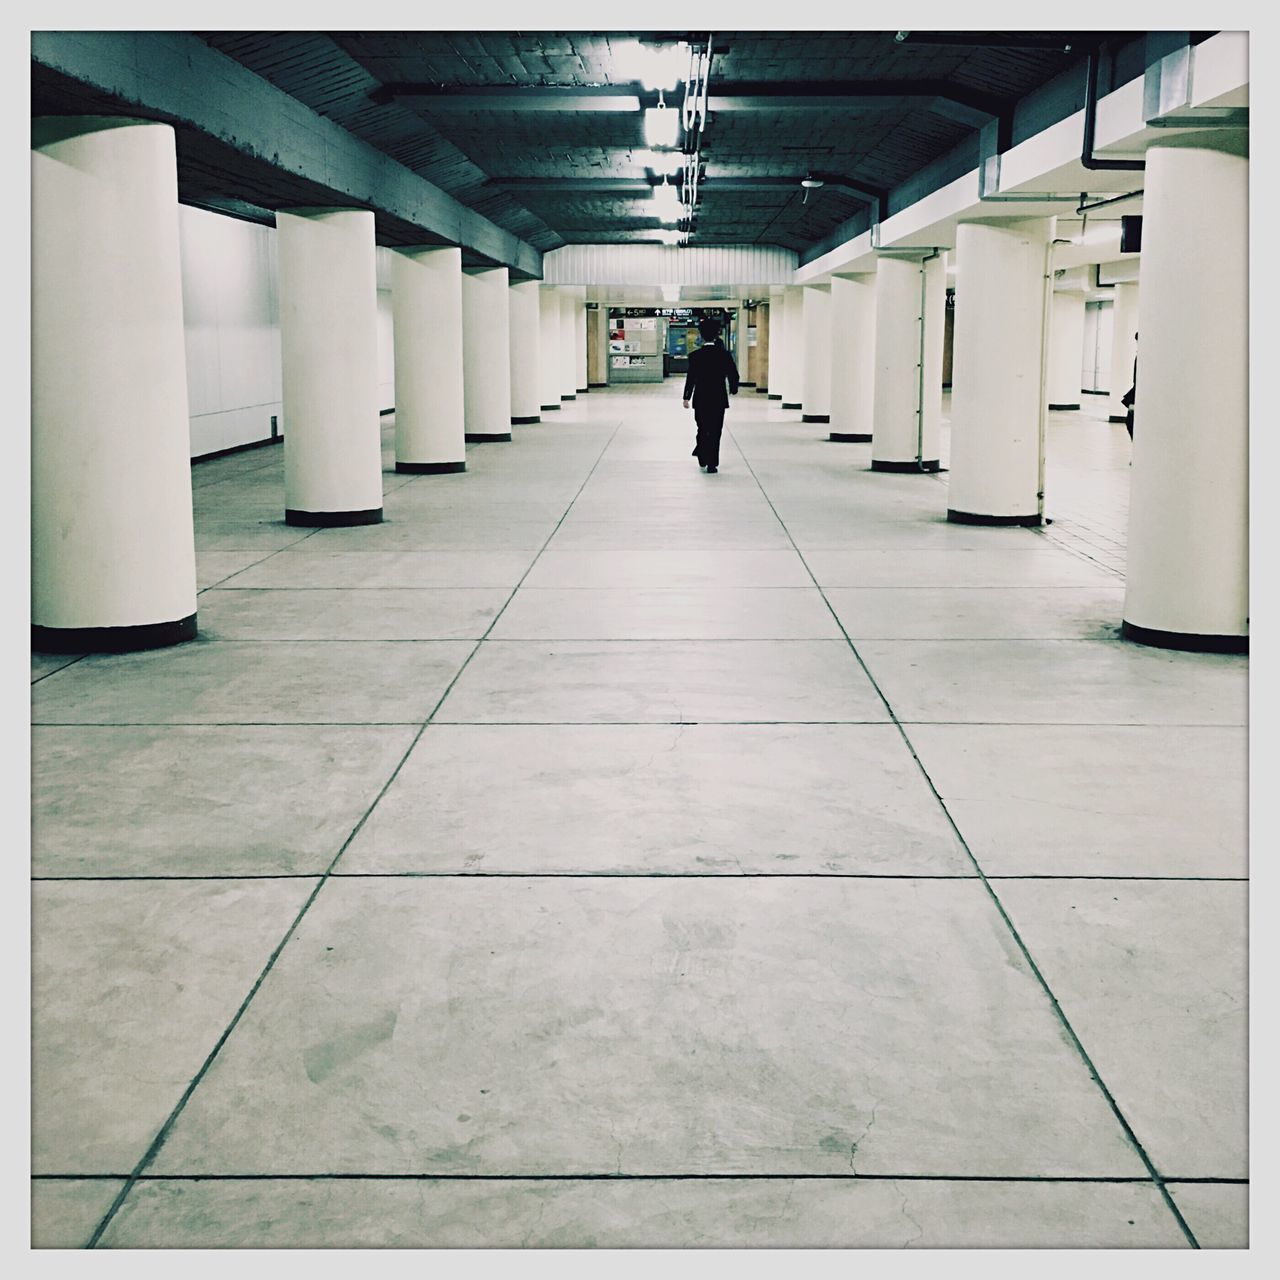 Man walking in subway station